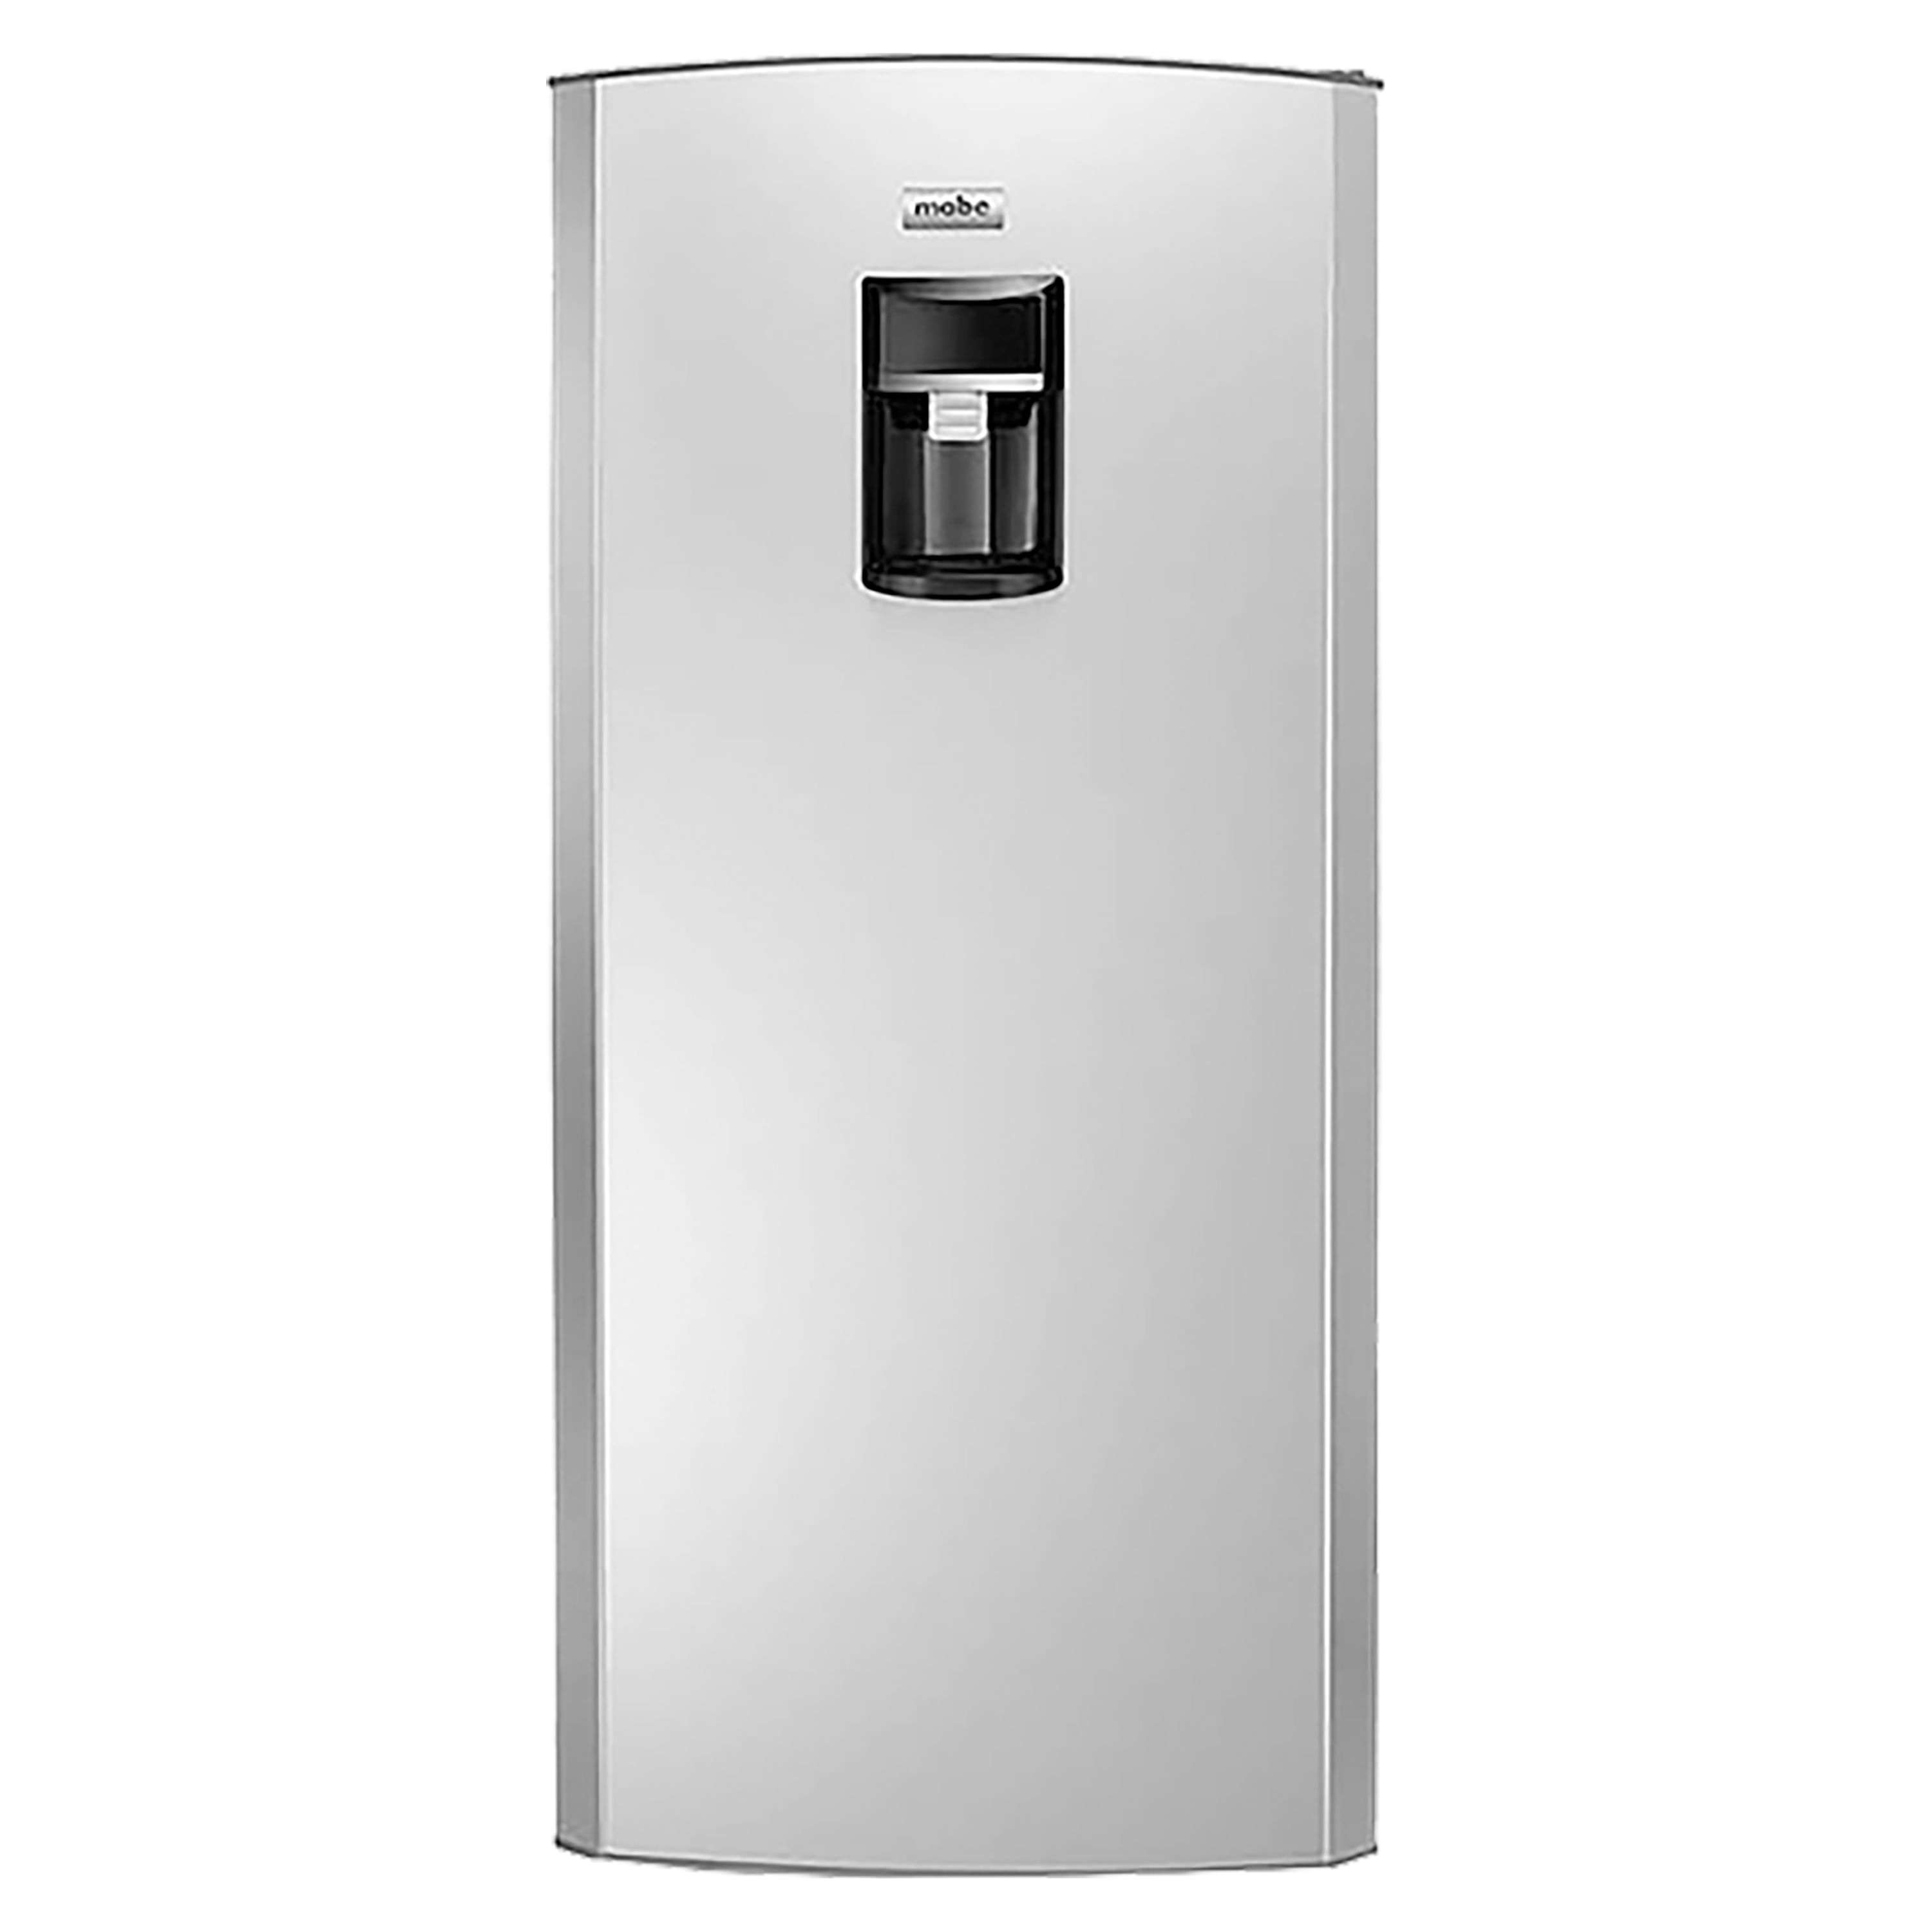 Refrigerador-Mabe-Inoxidable-Rmu210Fanu-8piezas-1-25919